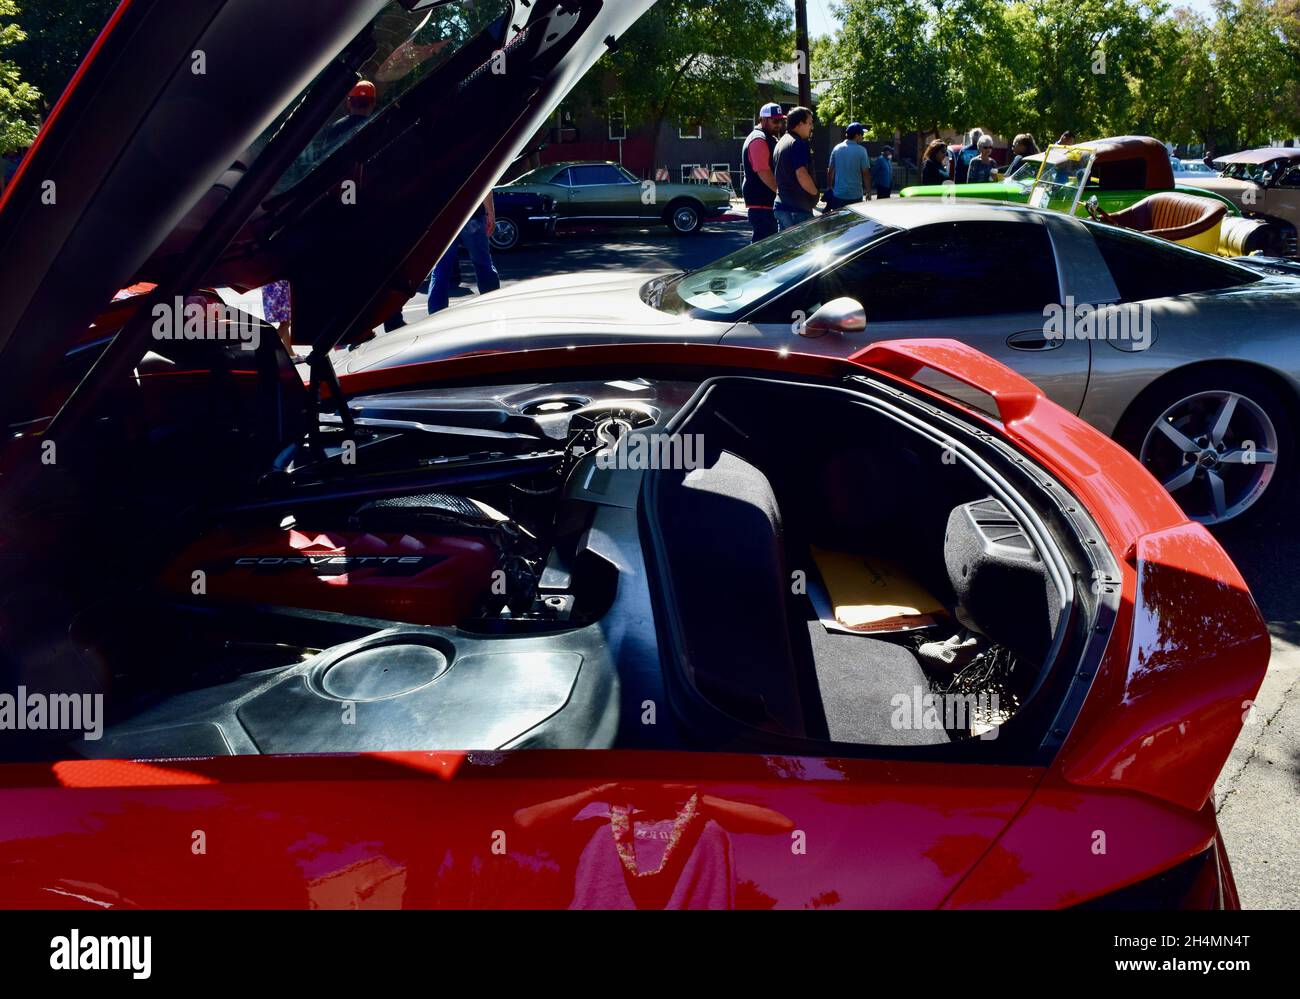 FRESNO, STATI UNITI - 09 ottobre 2021: Primo piano del NUOVO motore Red Corvette Chevrolet Car una vista laterale che mostra un piccolo spazio di tronco Foto Stock